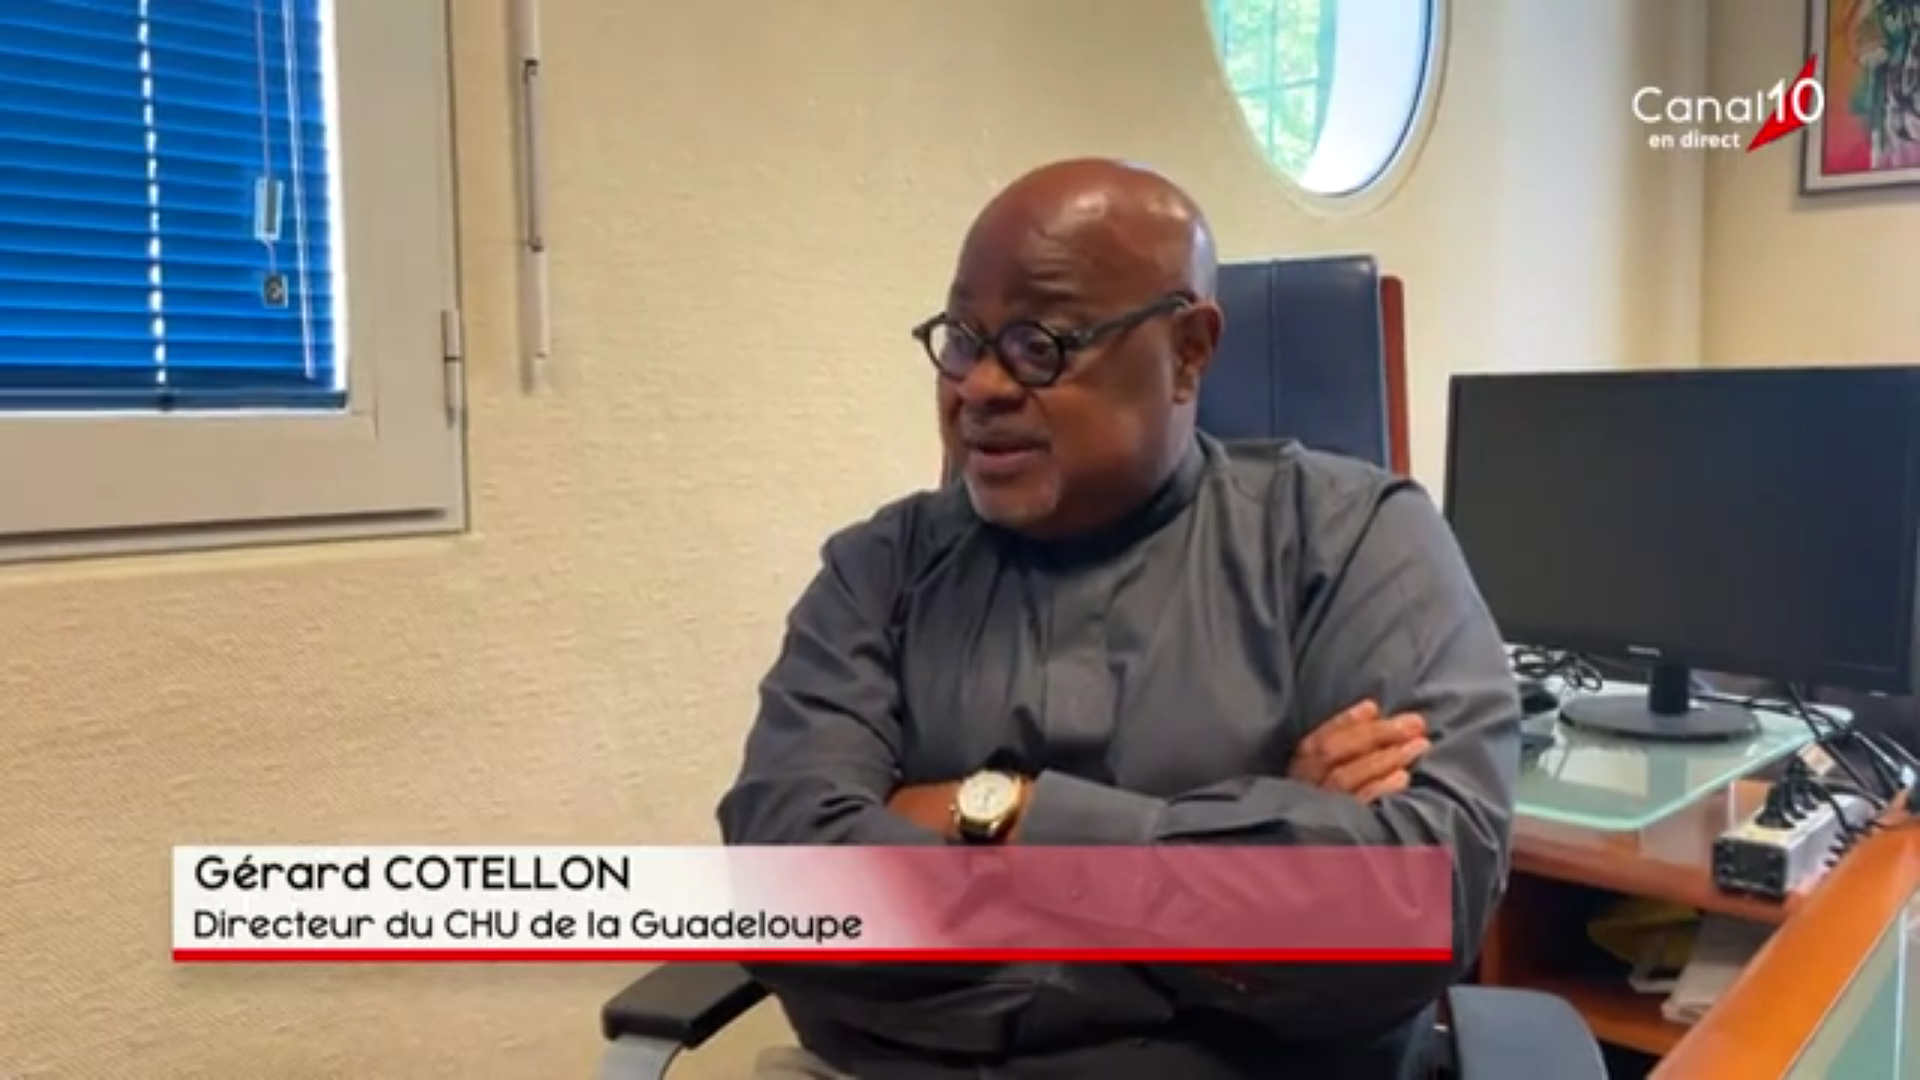 [Vidéo] Onews Guadeloupe. Gérard COTTELON Directeur du CHU s exprime sur la situation